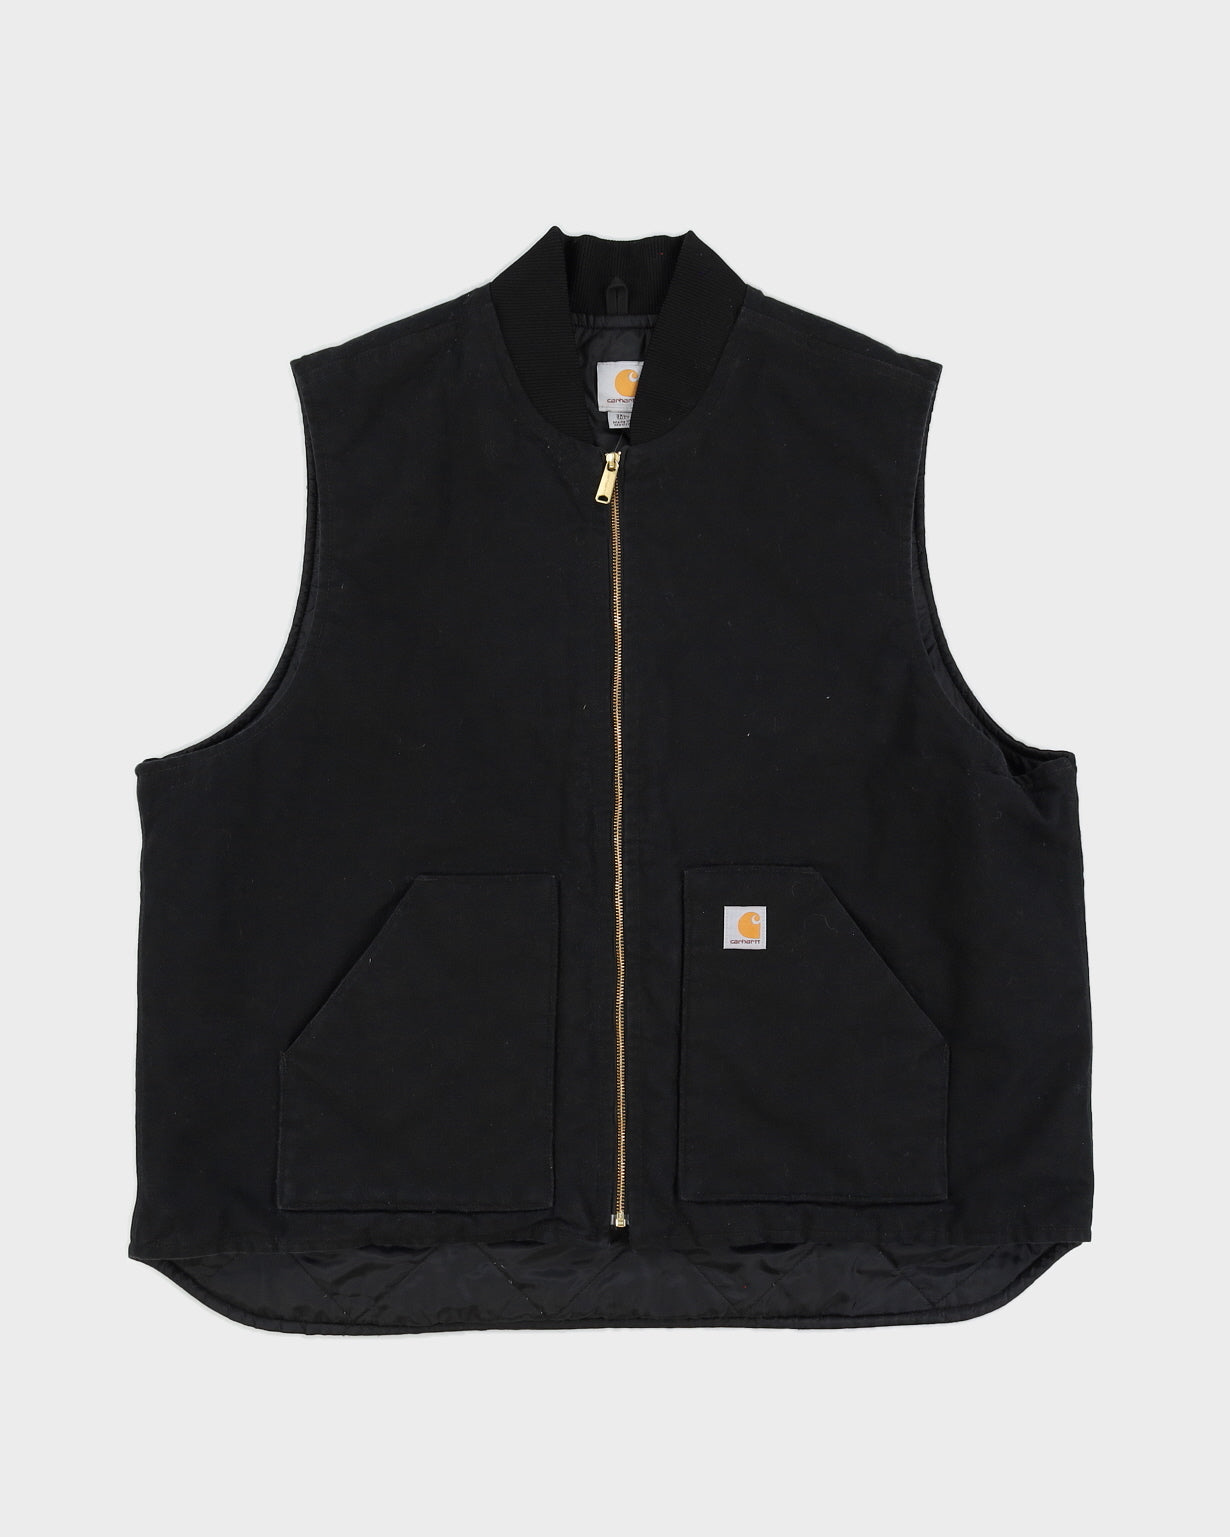 Carhartt Black Canvas Vest - XXXL